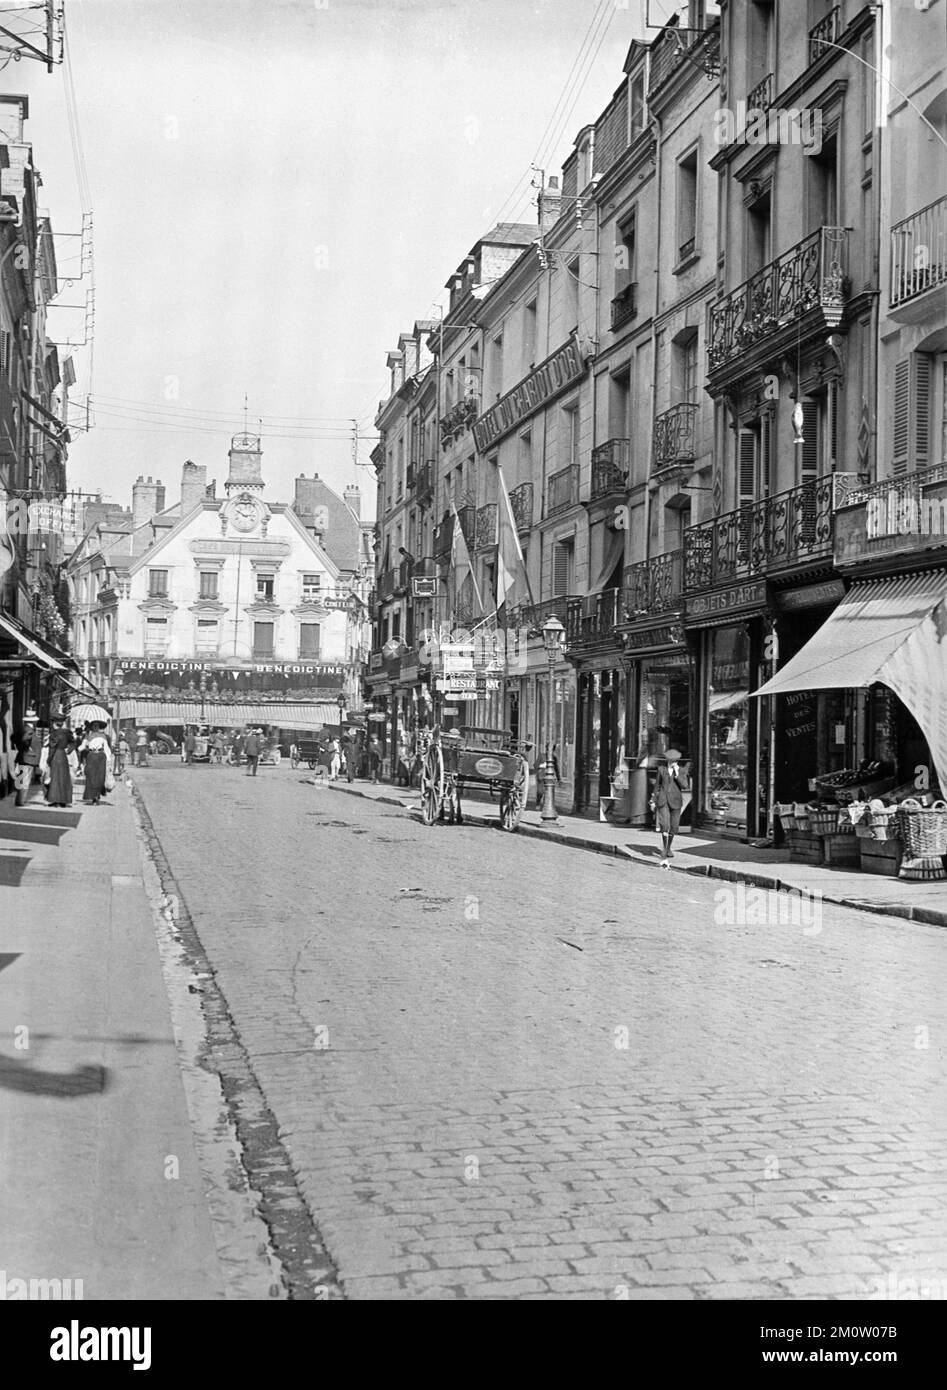 Una vendemmia fine 19th ° secolo in bianco e nero fotografia che mostra il centro di Dieppe in Francia. Il Cafe Des Tribunaux si trova alla fine della strada. Foto Stock